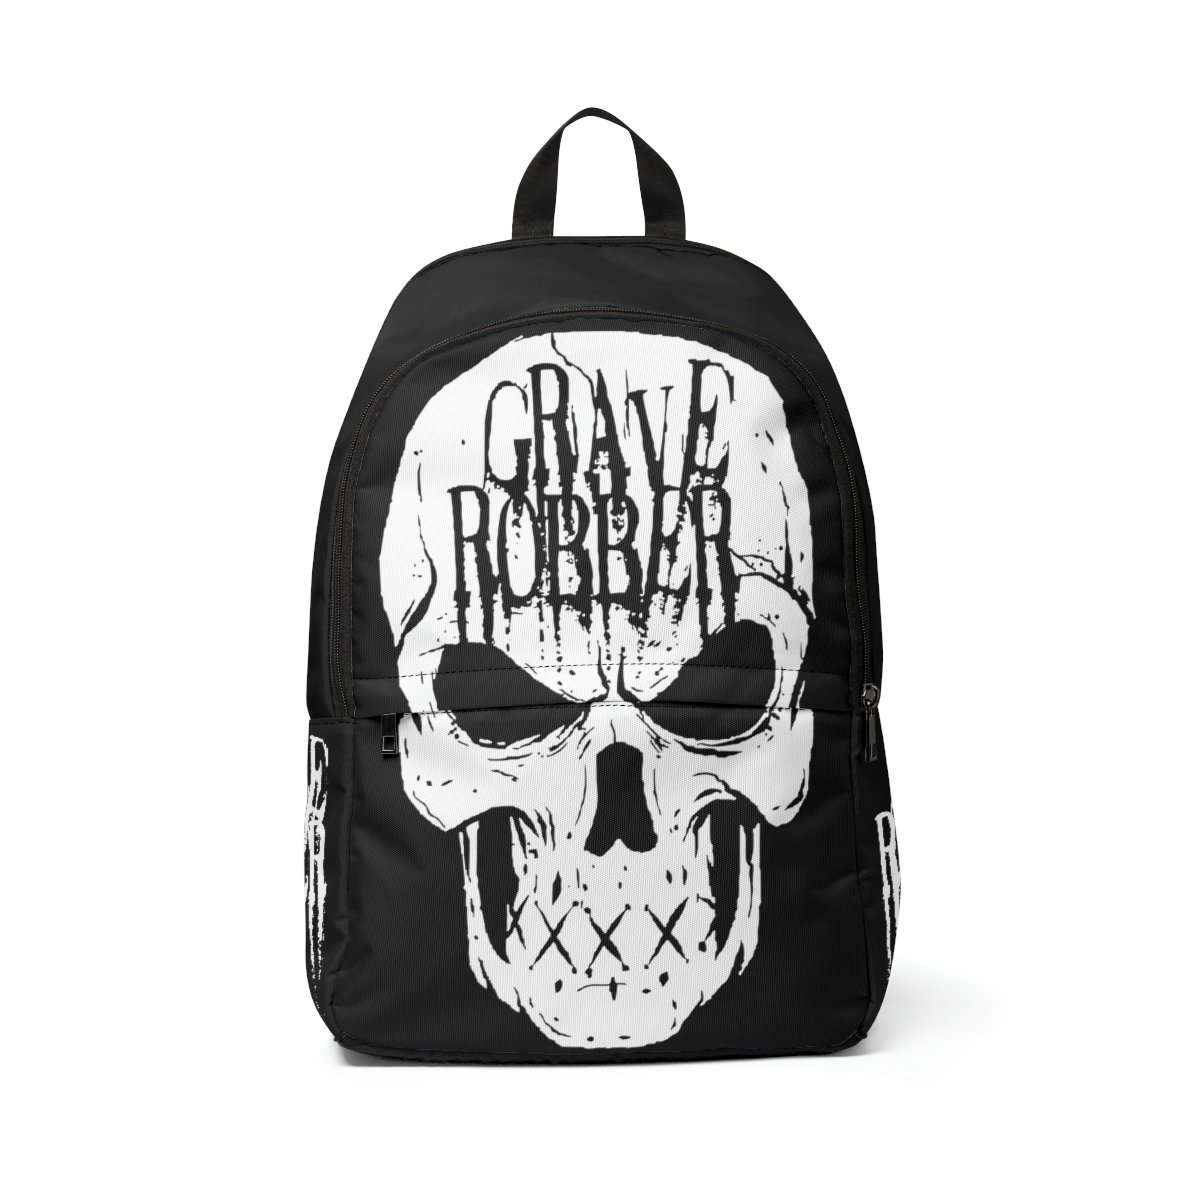 Grave Robber Skull Fabric Backpack